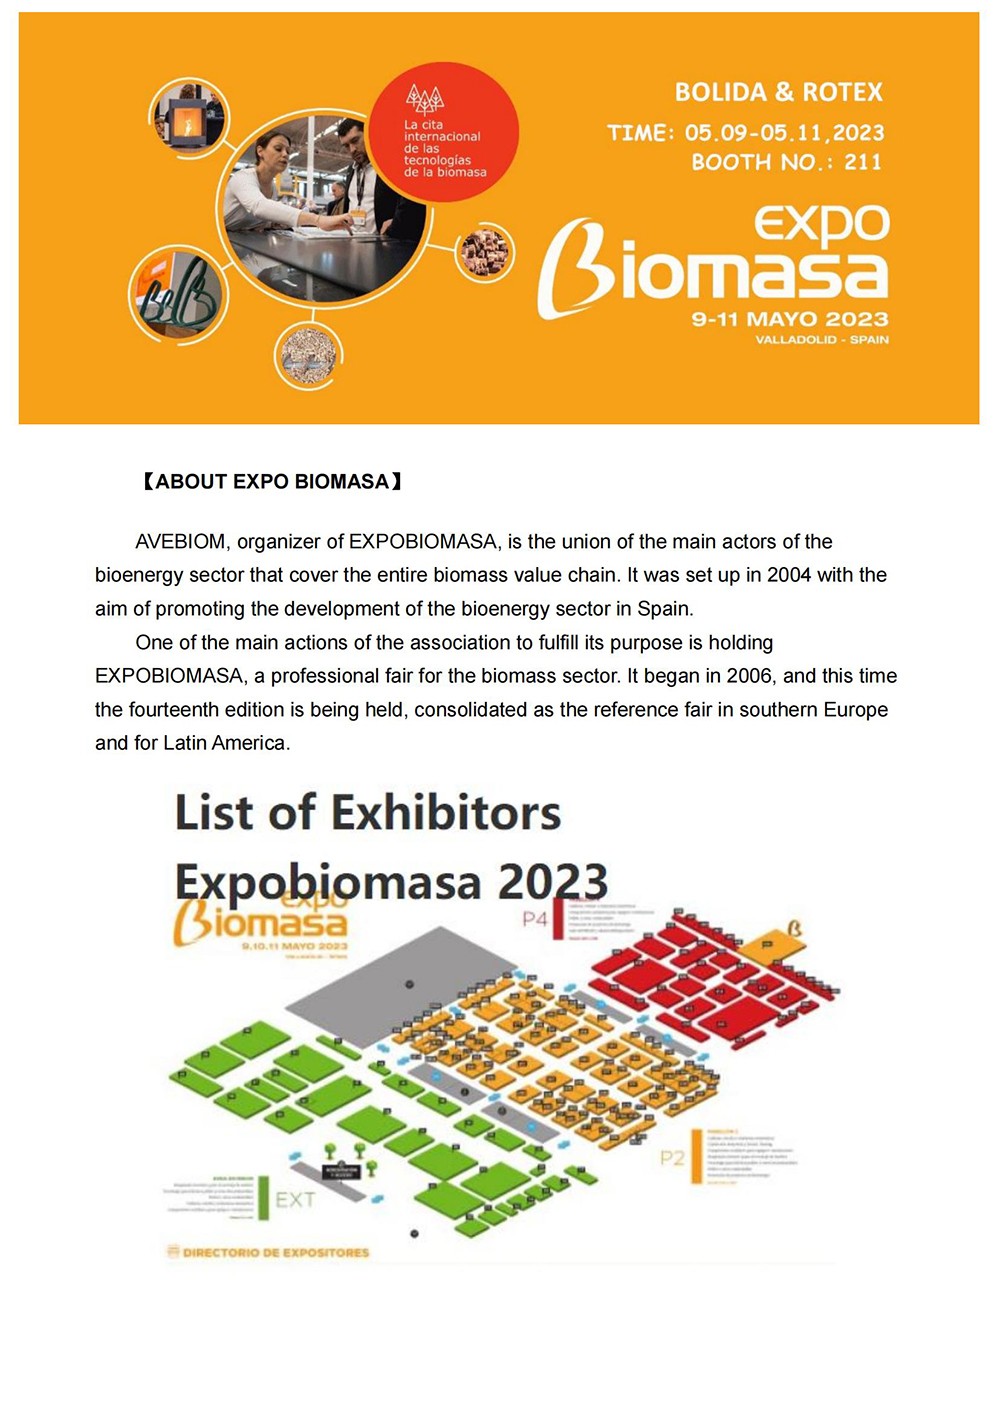 BOLIDA INVITE YOU ATTEND EXPO BIOMASA SPAIN 2023_00.jpg